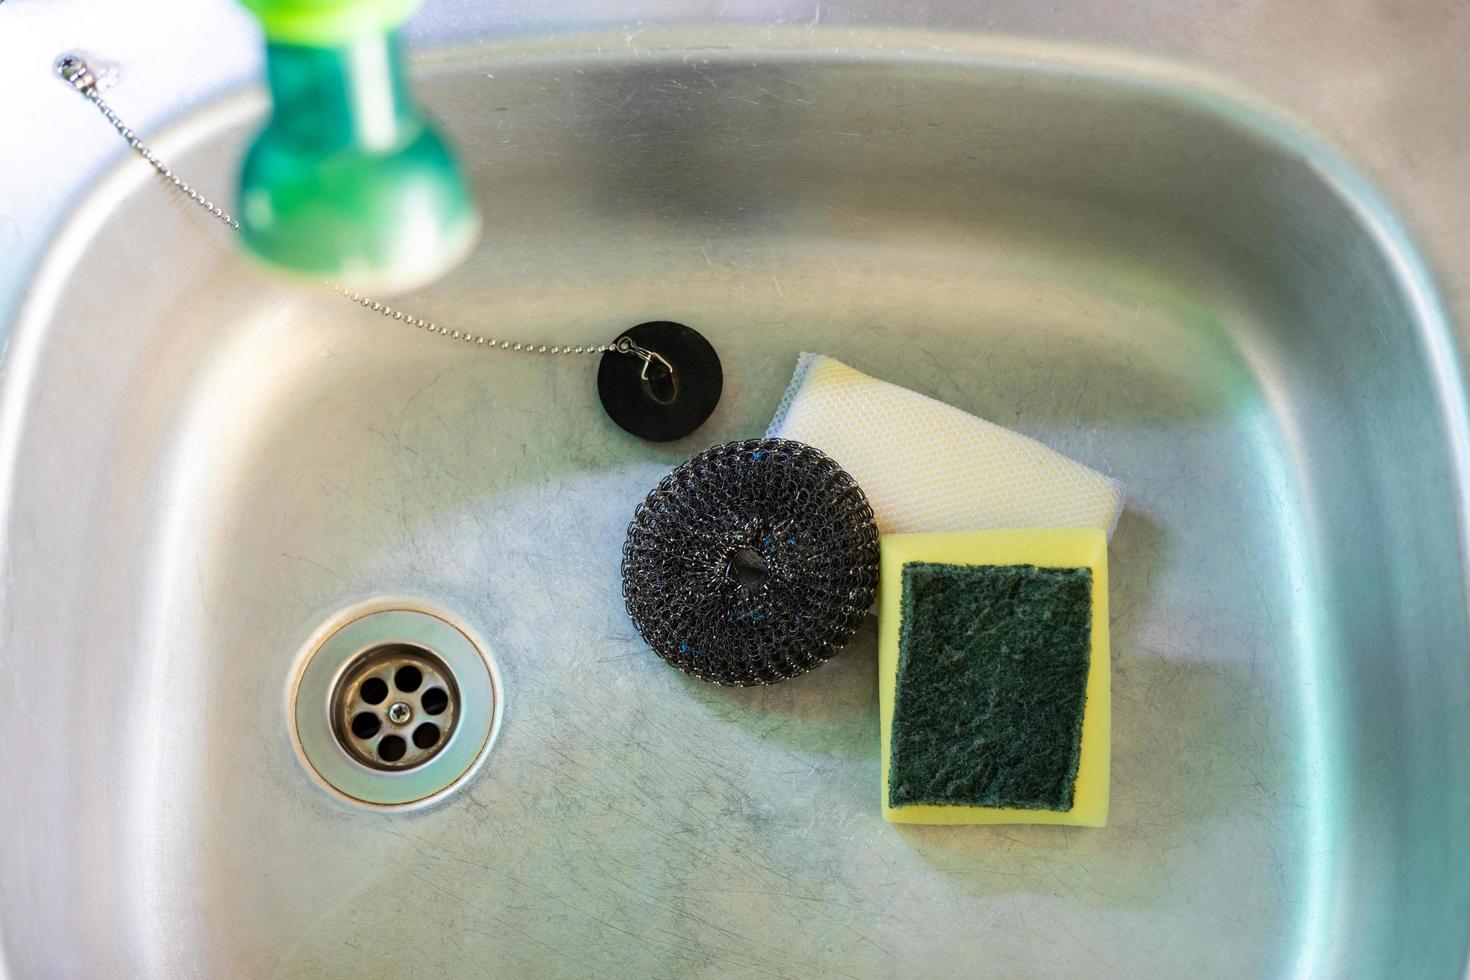 staalwol en spons gebruikt voor het reinigen worden in de gootsteen geplaatst. foto